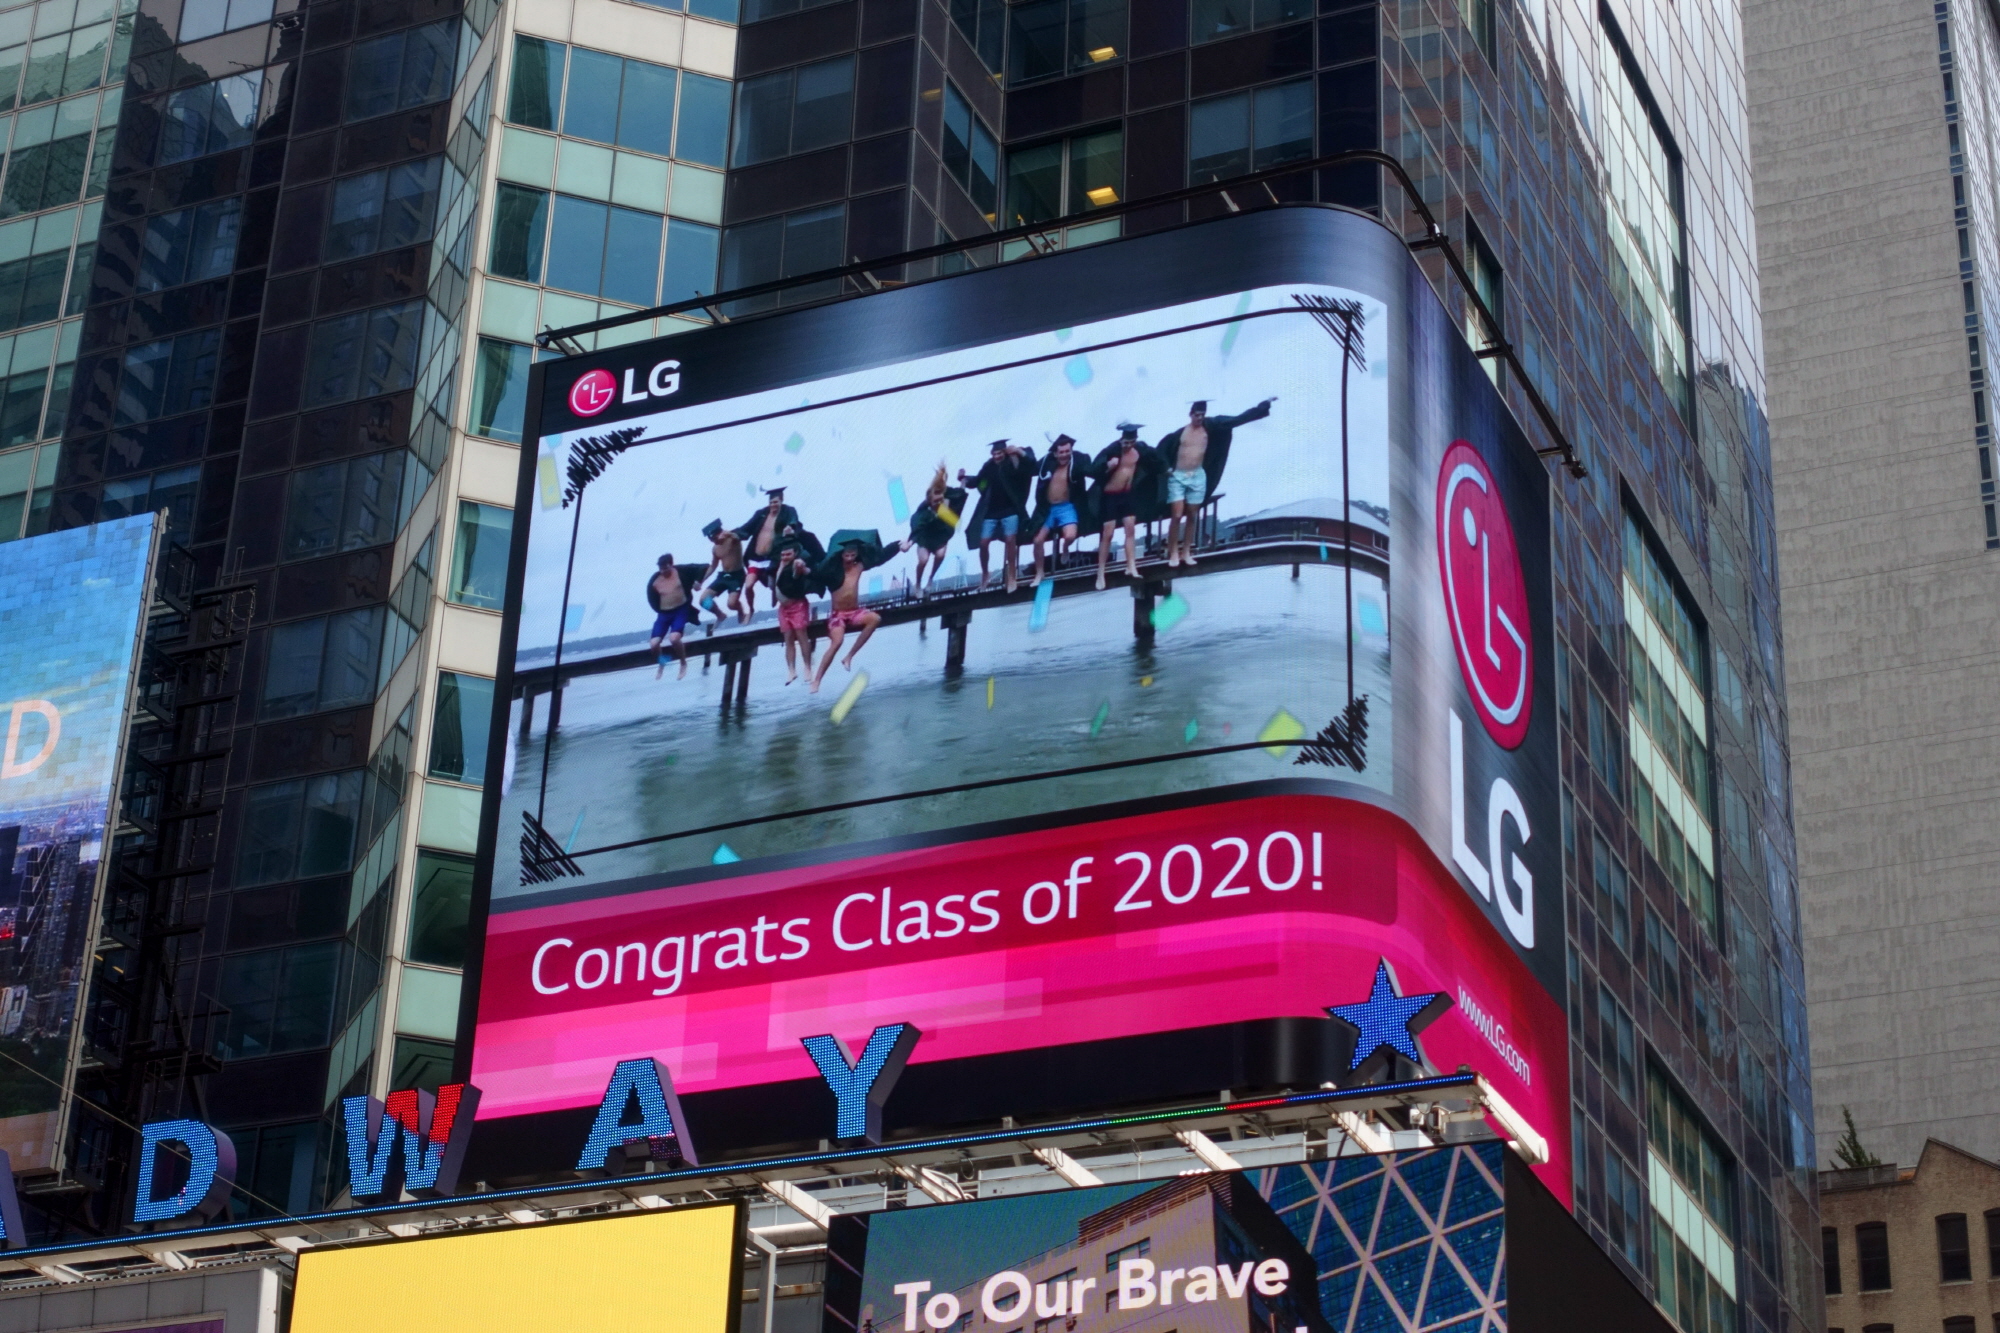 뉴욕 타임스스퀘어에 있는 LG전자 전광판에 졸업생 375명의 사진을 하루 48회씩 보여주며 올해 학교를 졸업하는 모든 졸업생들에게 진심어린 축하를 전하고 있다.